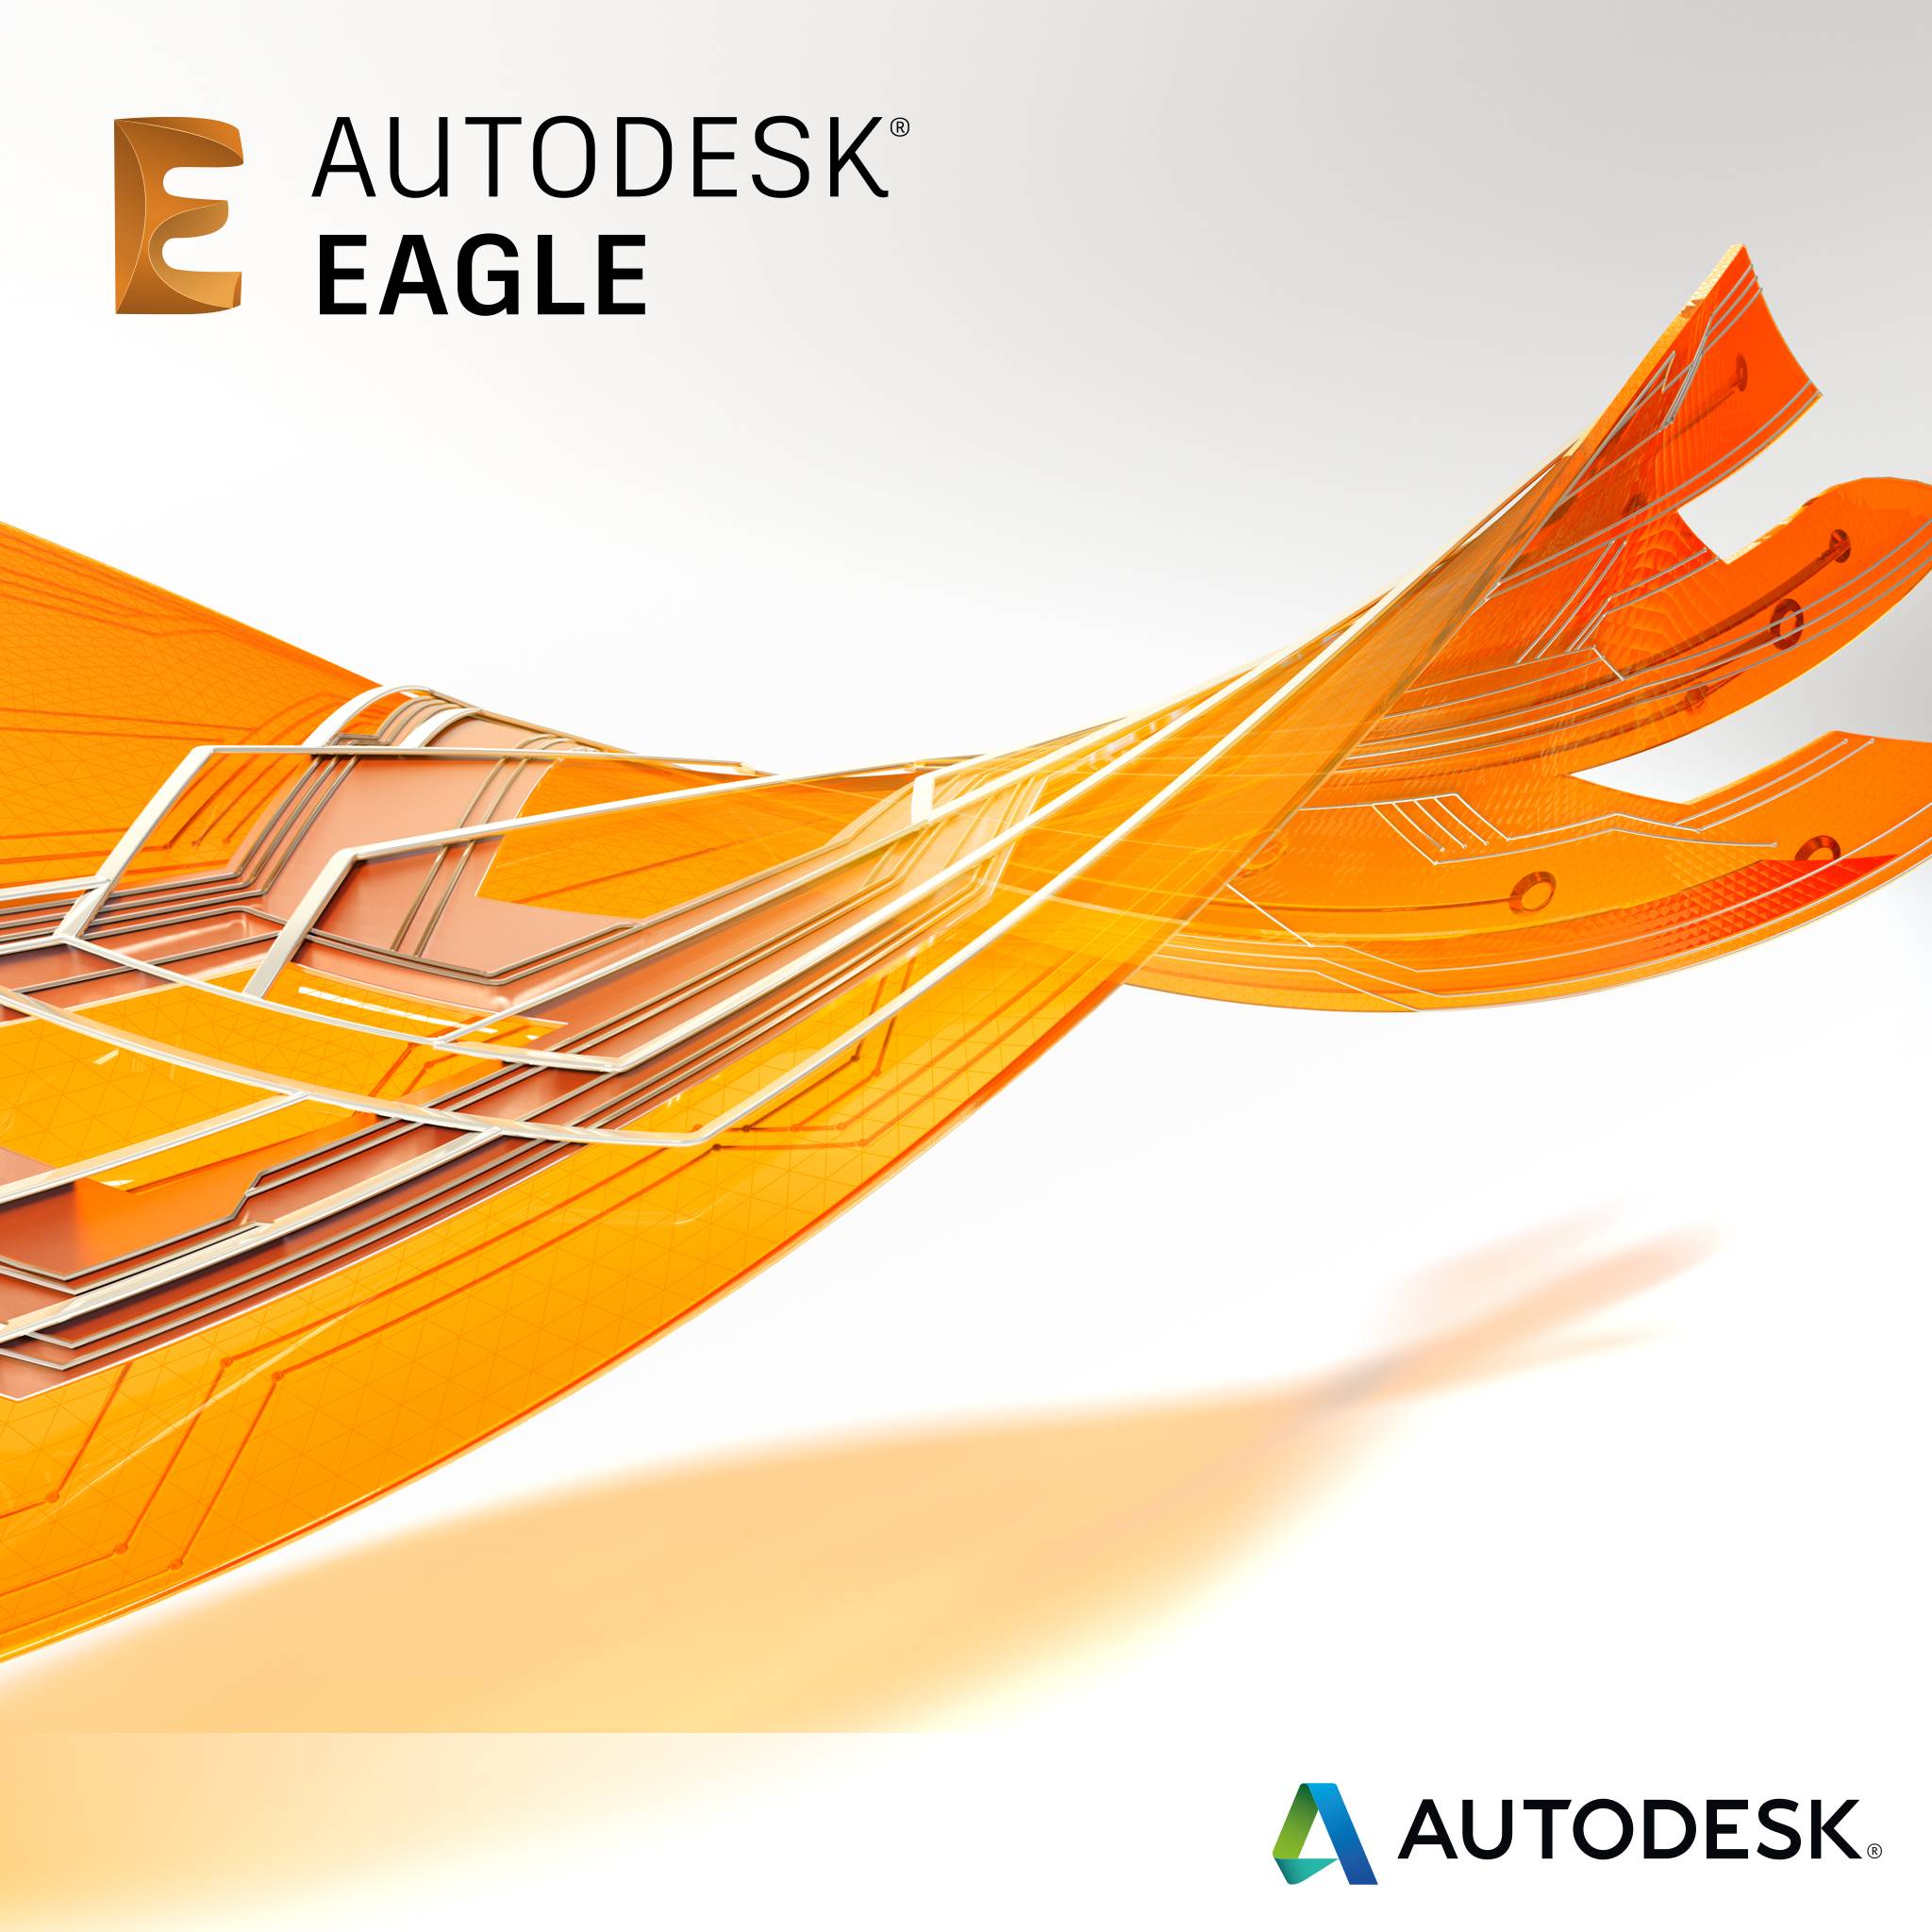 Tan Eagle Logo - New in Autodesk EAGLE: Modular Design Blocks | EAGLE | Blog